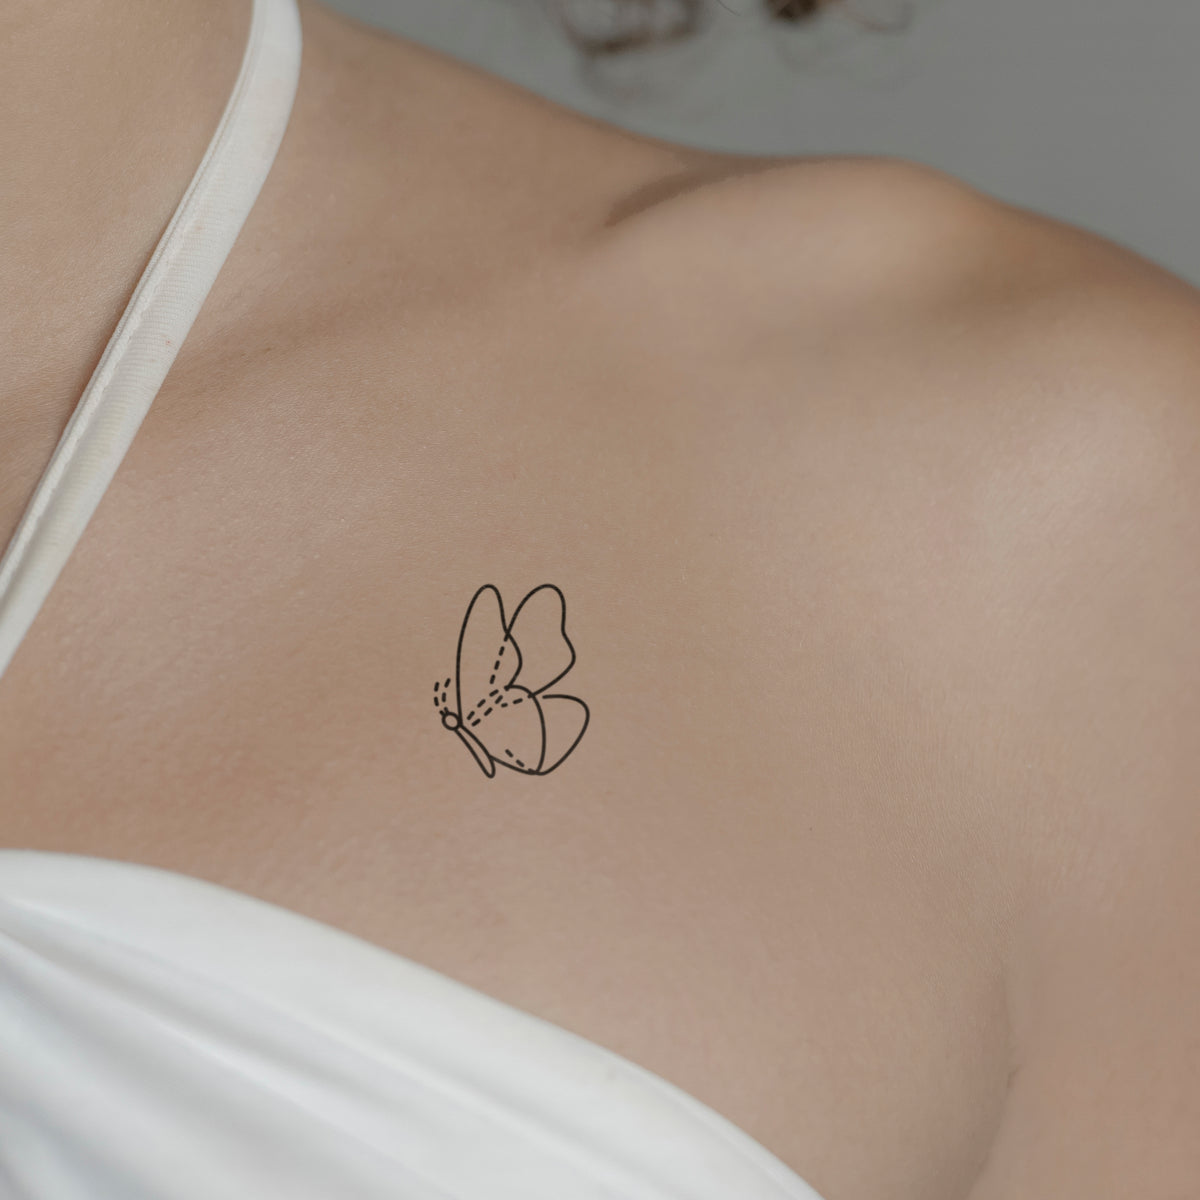 Grosser Schmetterling Tattoo von minink, der Marke für temporäre Tattoos.